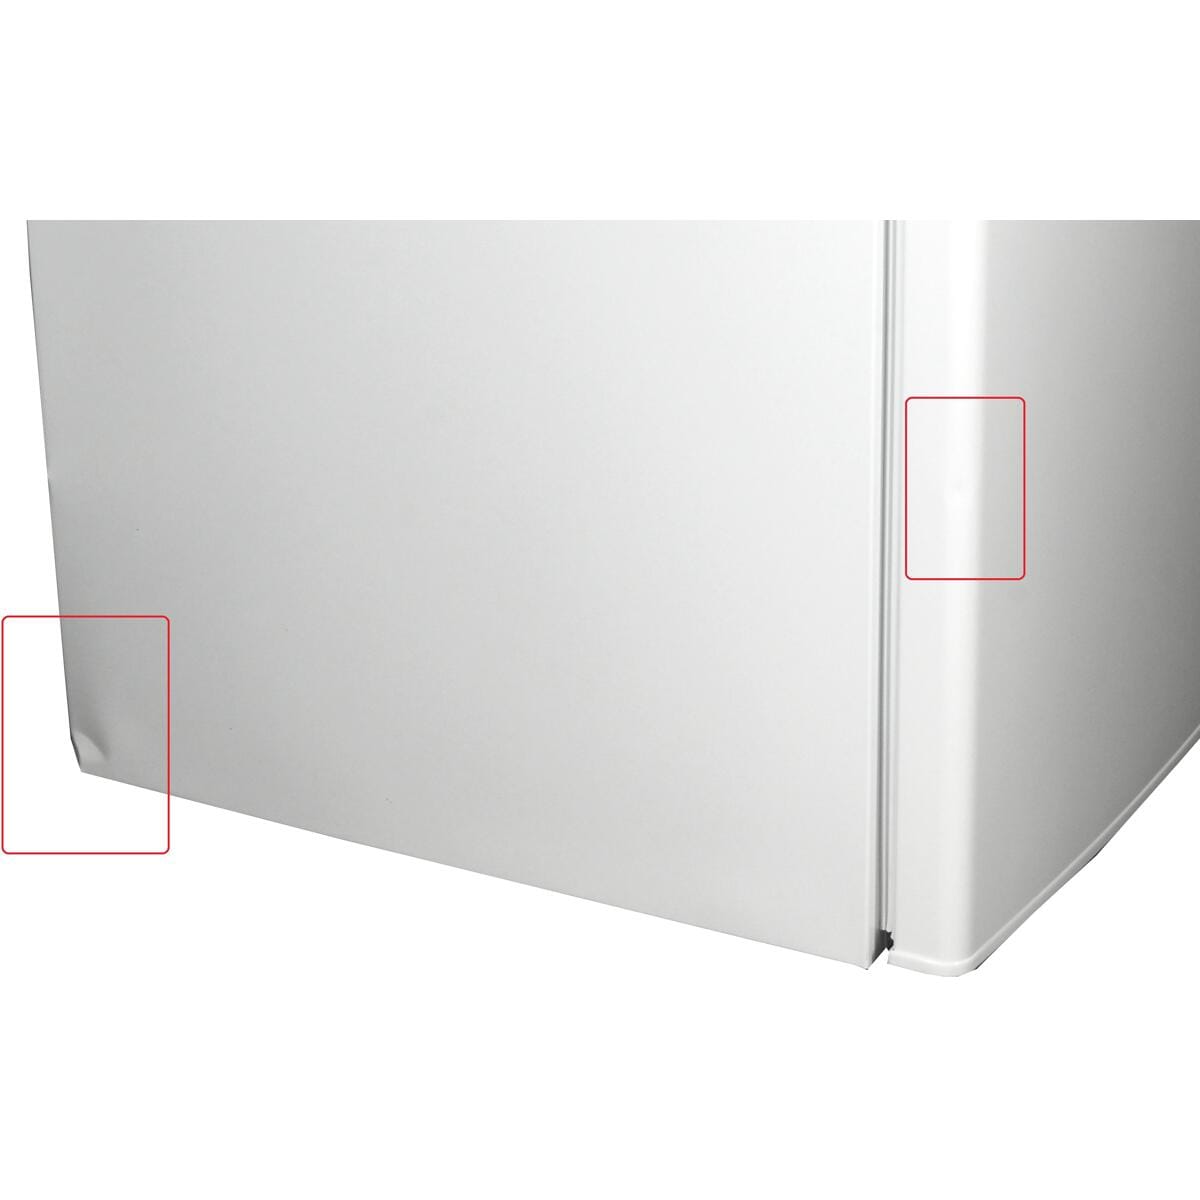 Exquisit KS16-4-E-040E Stand-Kühlschrank 55cm breit 109 Liter mit  Gefrierfach LED-Beleuchtung weiß